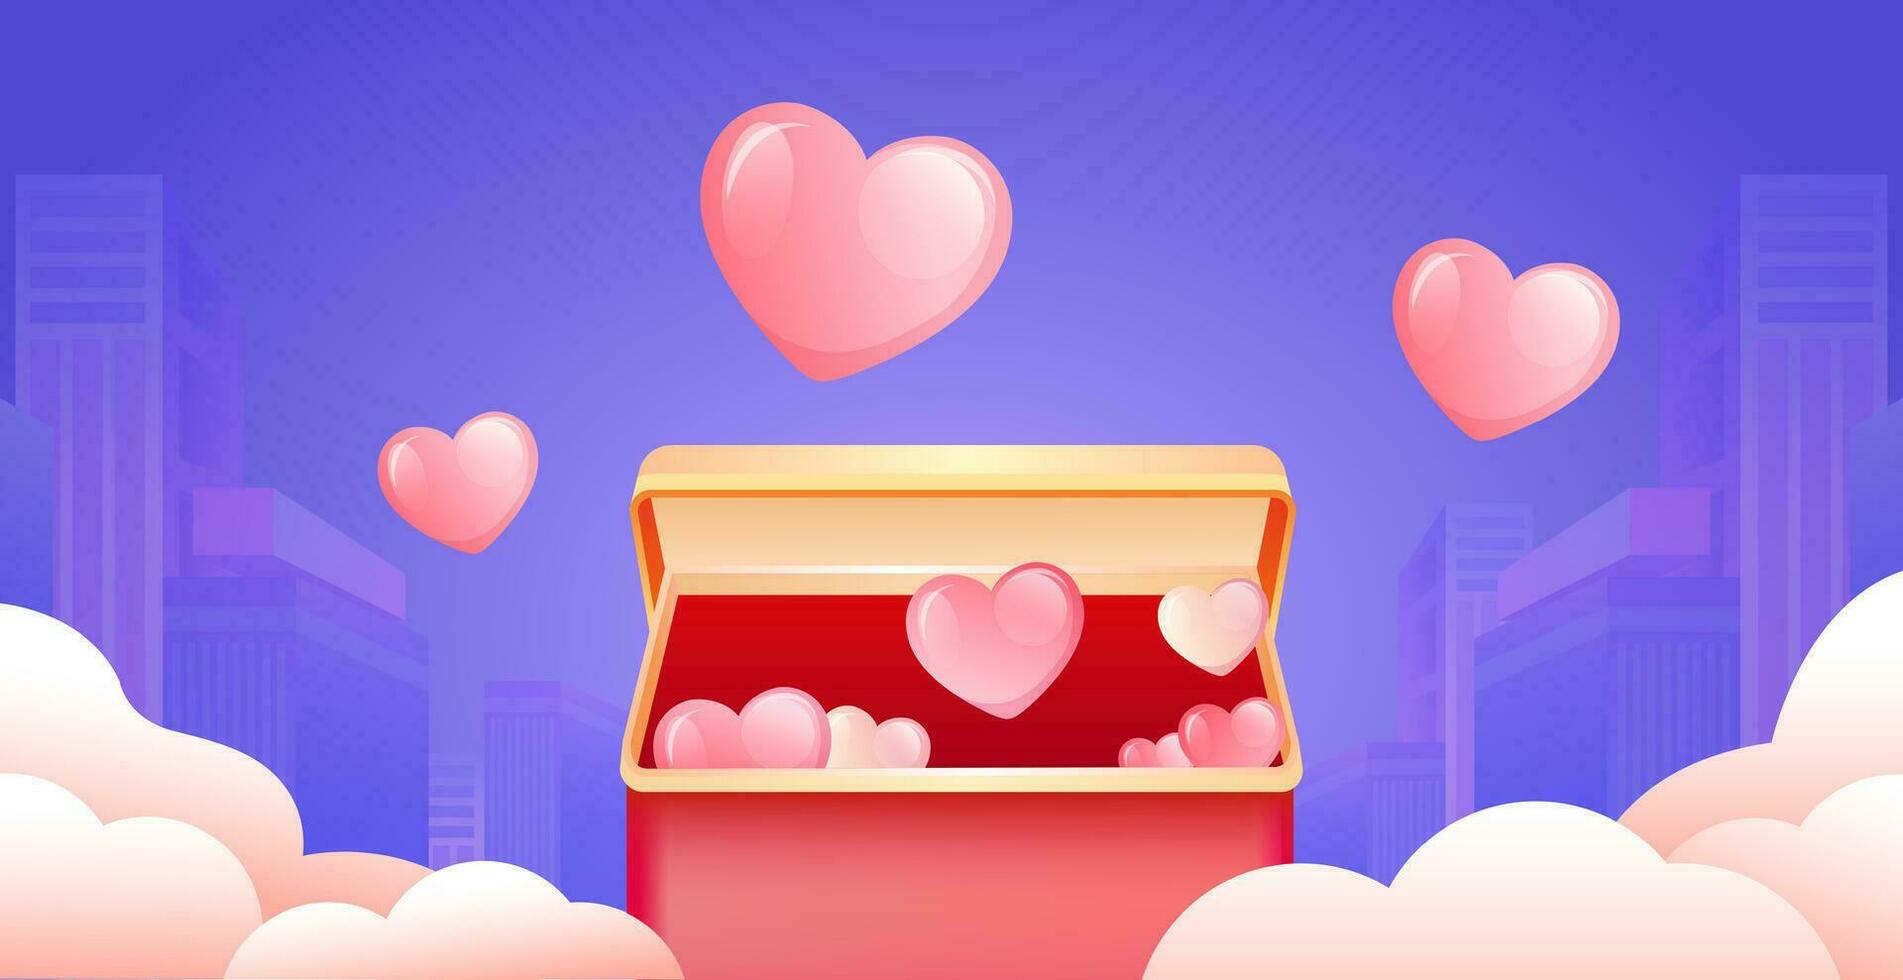 stad av kärlek, de gåva låda öppnas till avslöja en hjärta flygande i de romantisk stad himmel vektor